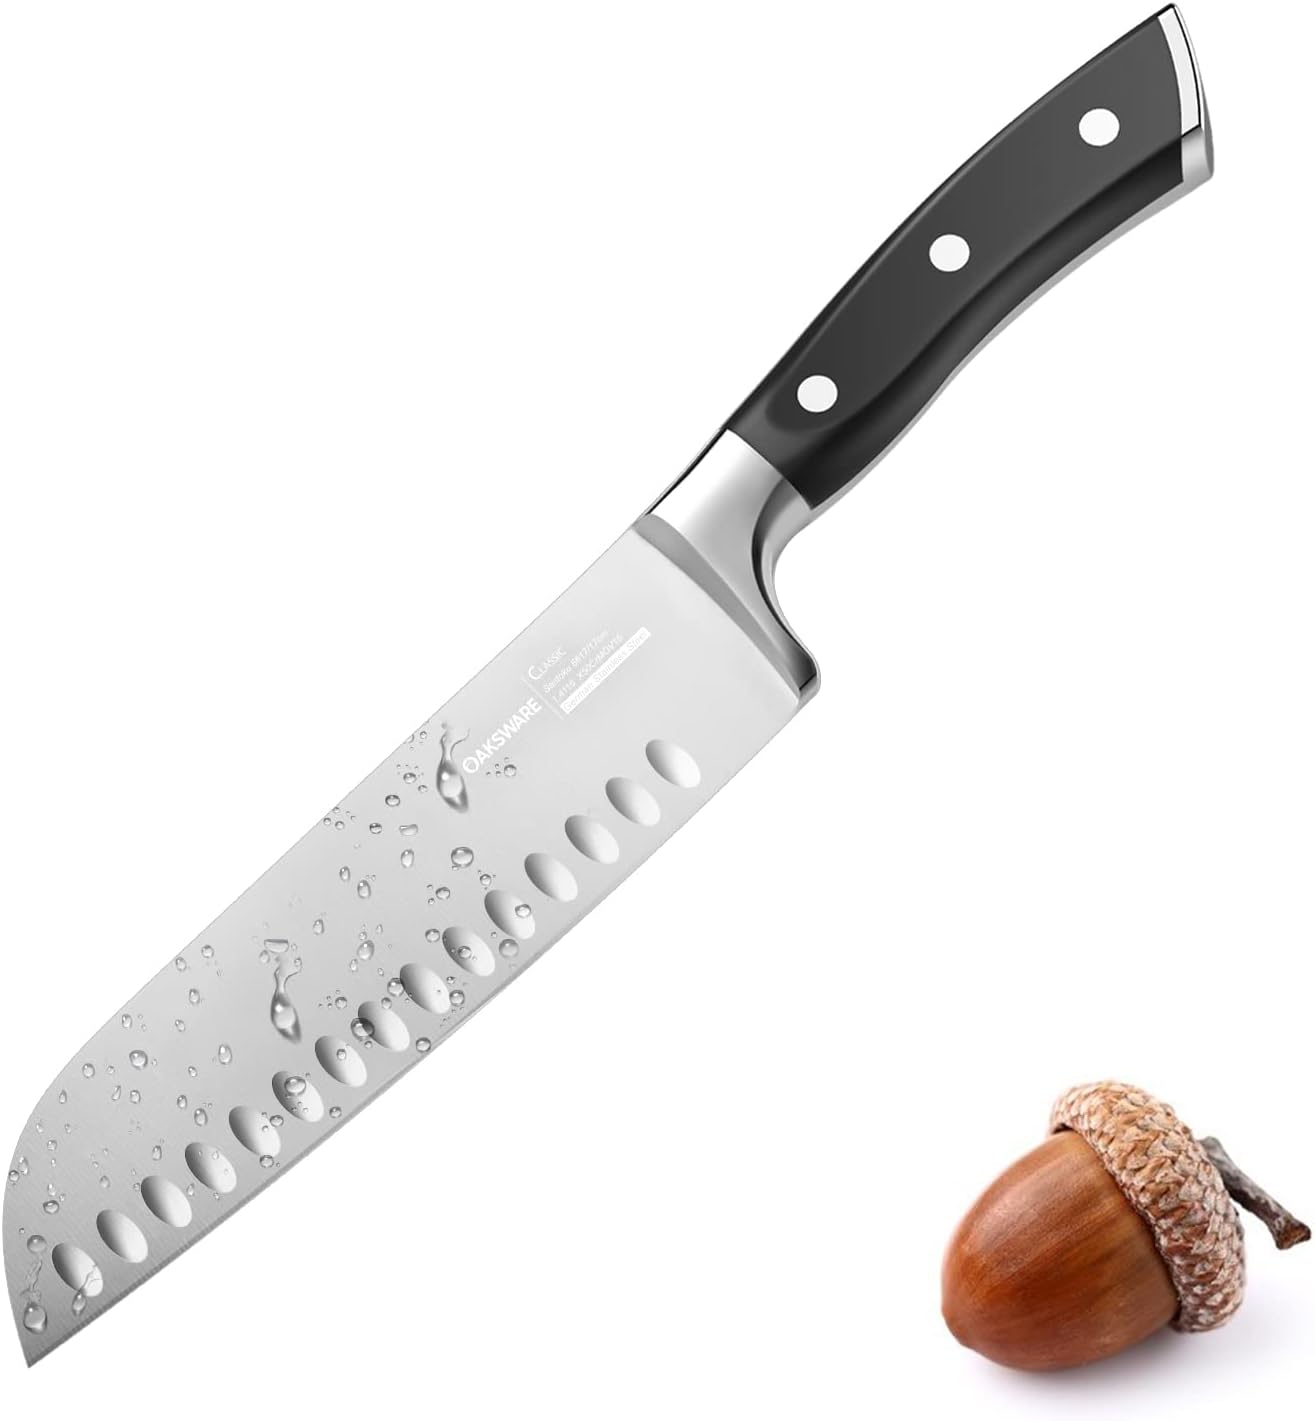 KD 7" Santoku Knife Razor Sharp Cutting Chopping Chef Knife